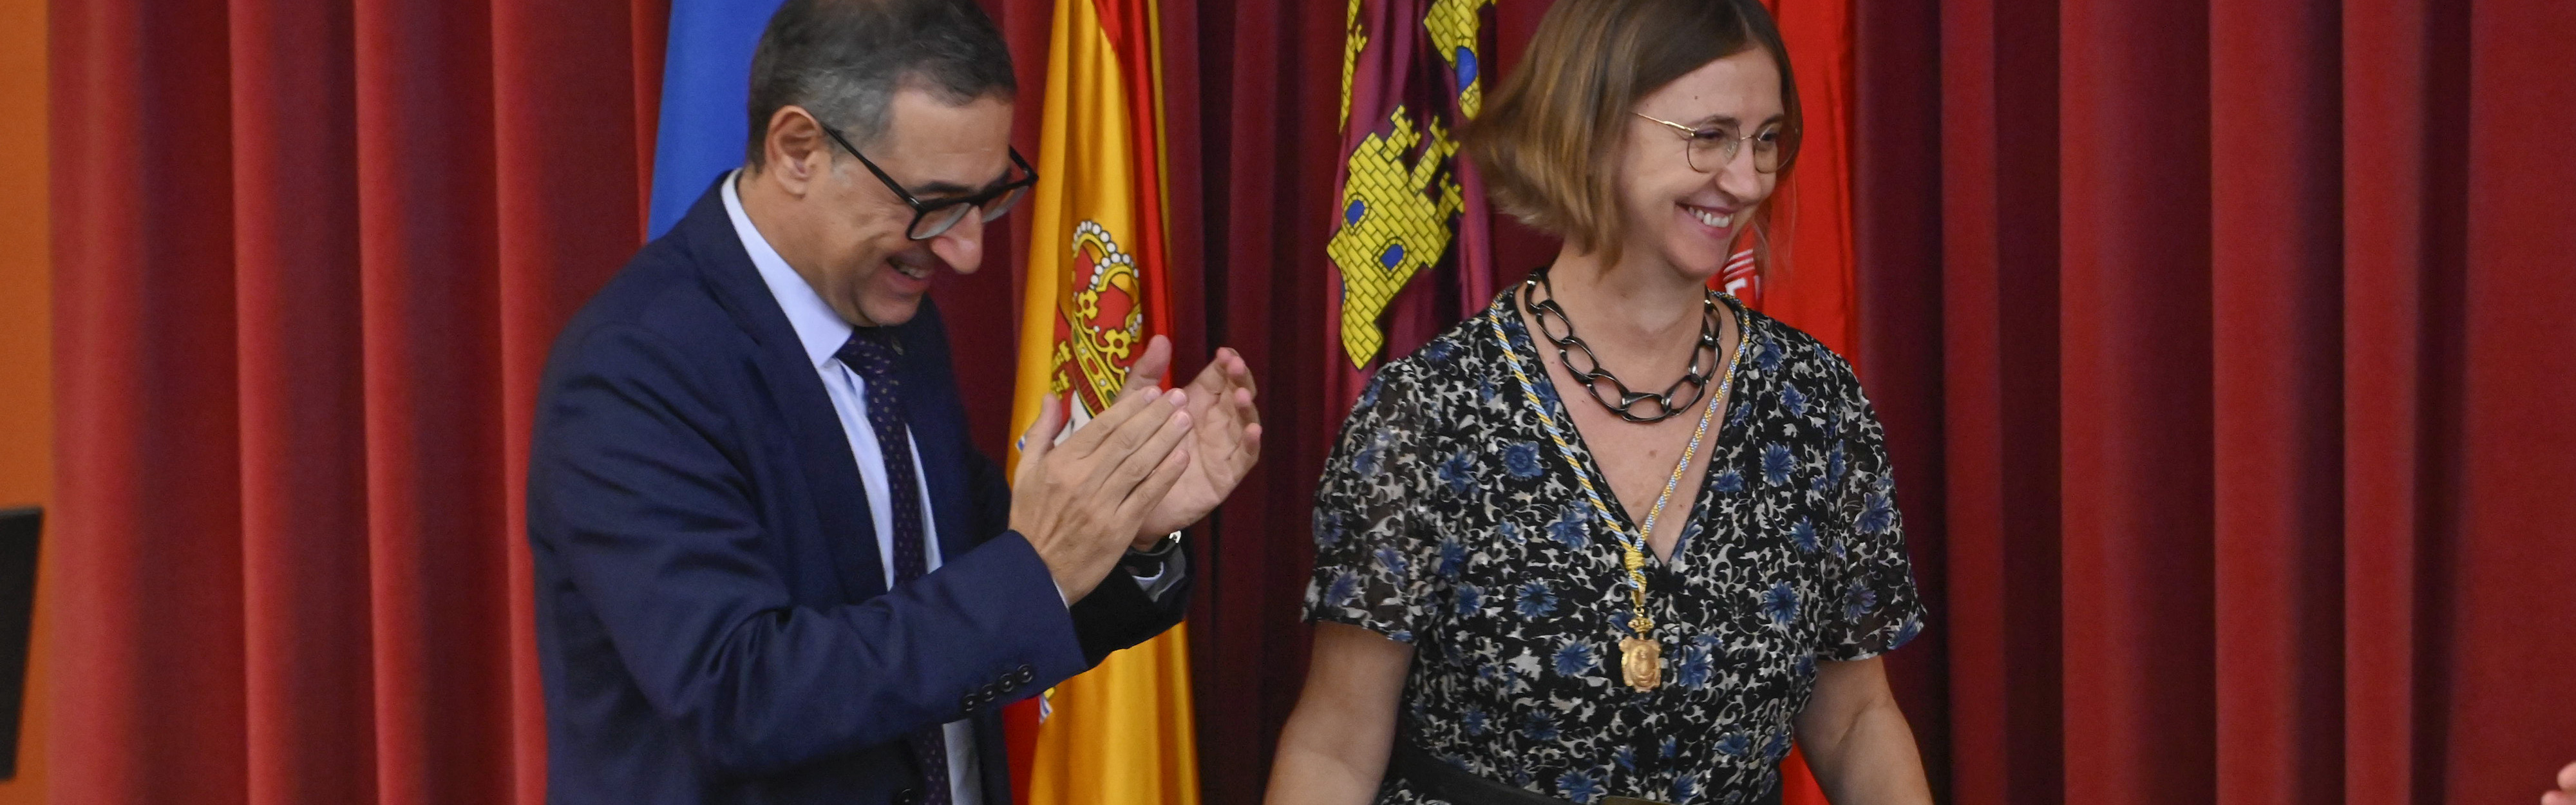 Francisca Pérez toma posesión como decana de la facultad de Filosofía de la Universidad de Murcia